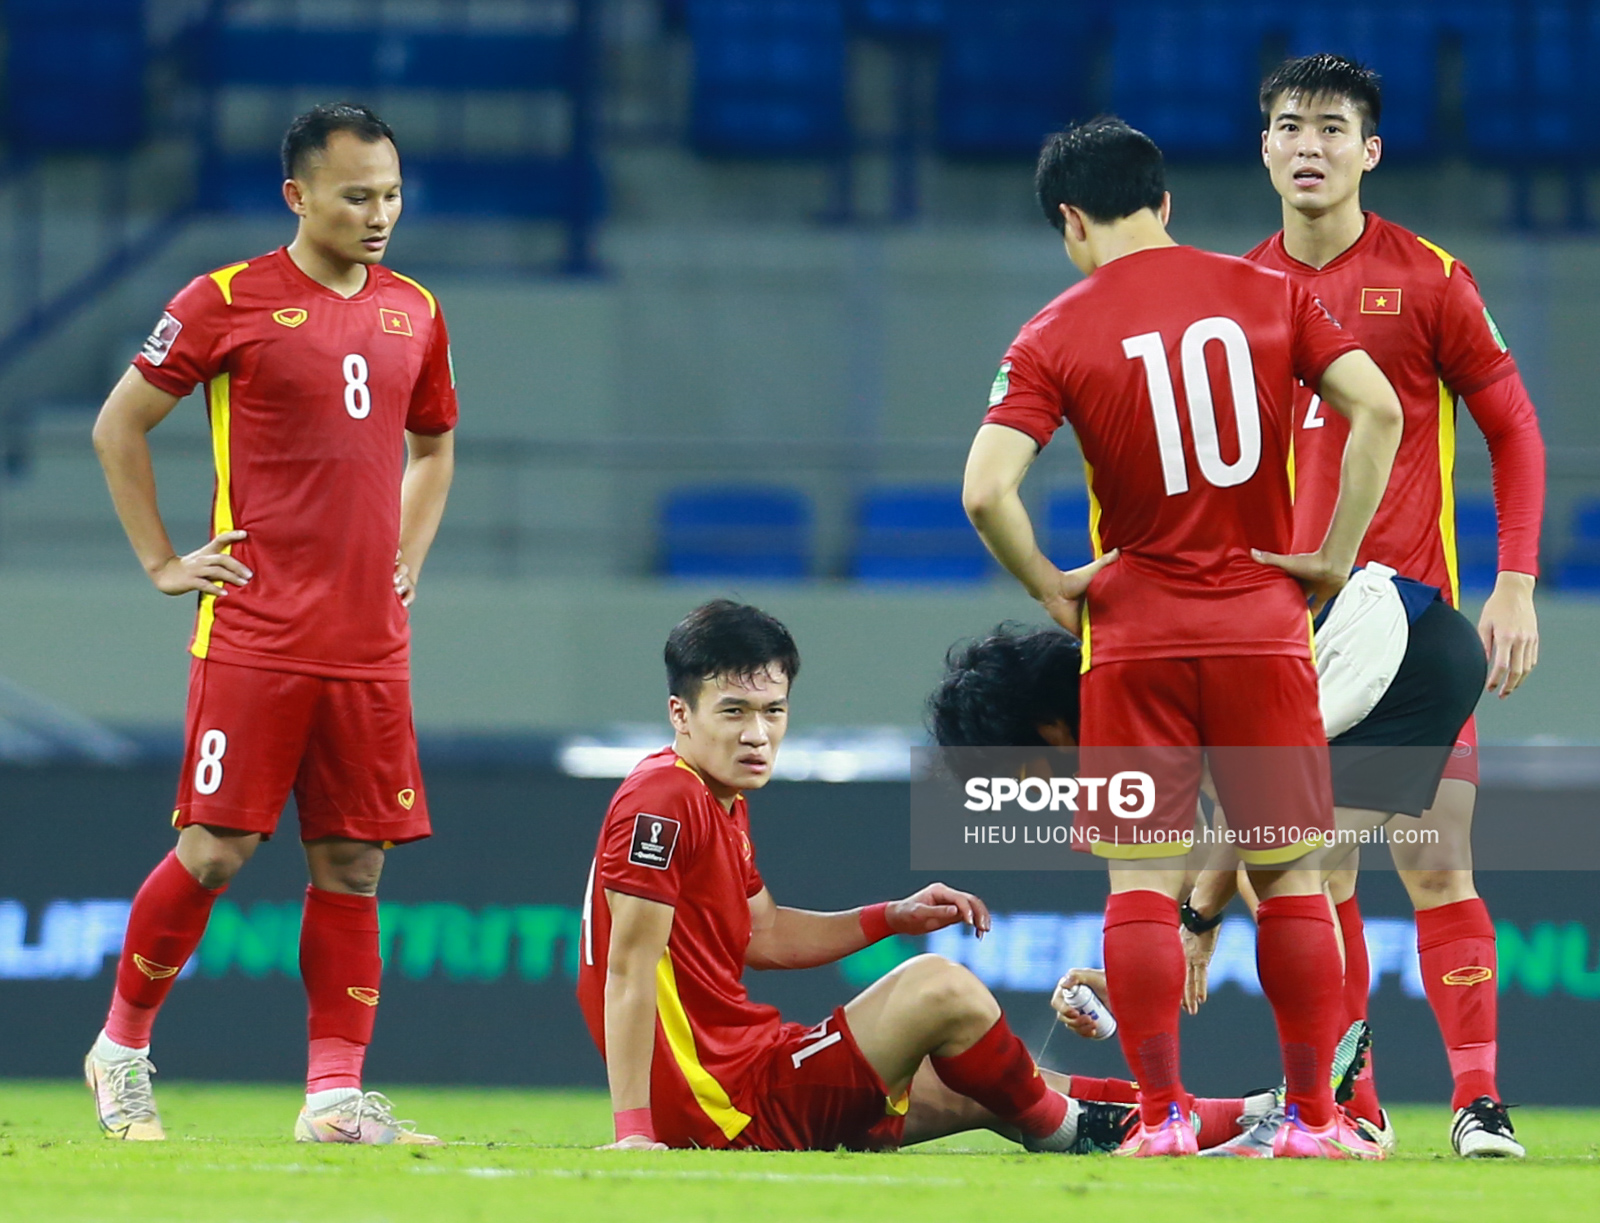 Hoàng Đức chơi hay bất ngờ, thay thế hoàn hảo cho Tuấn Anh ở tuyển Việt Nam - Ảnh 9.